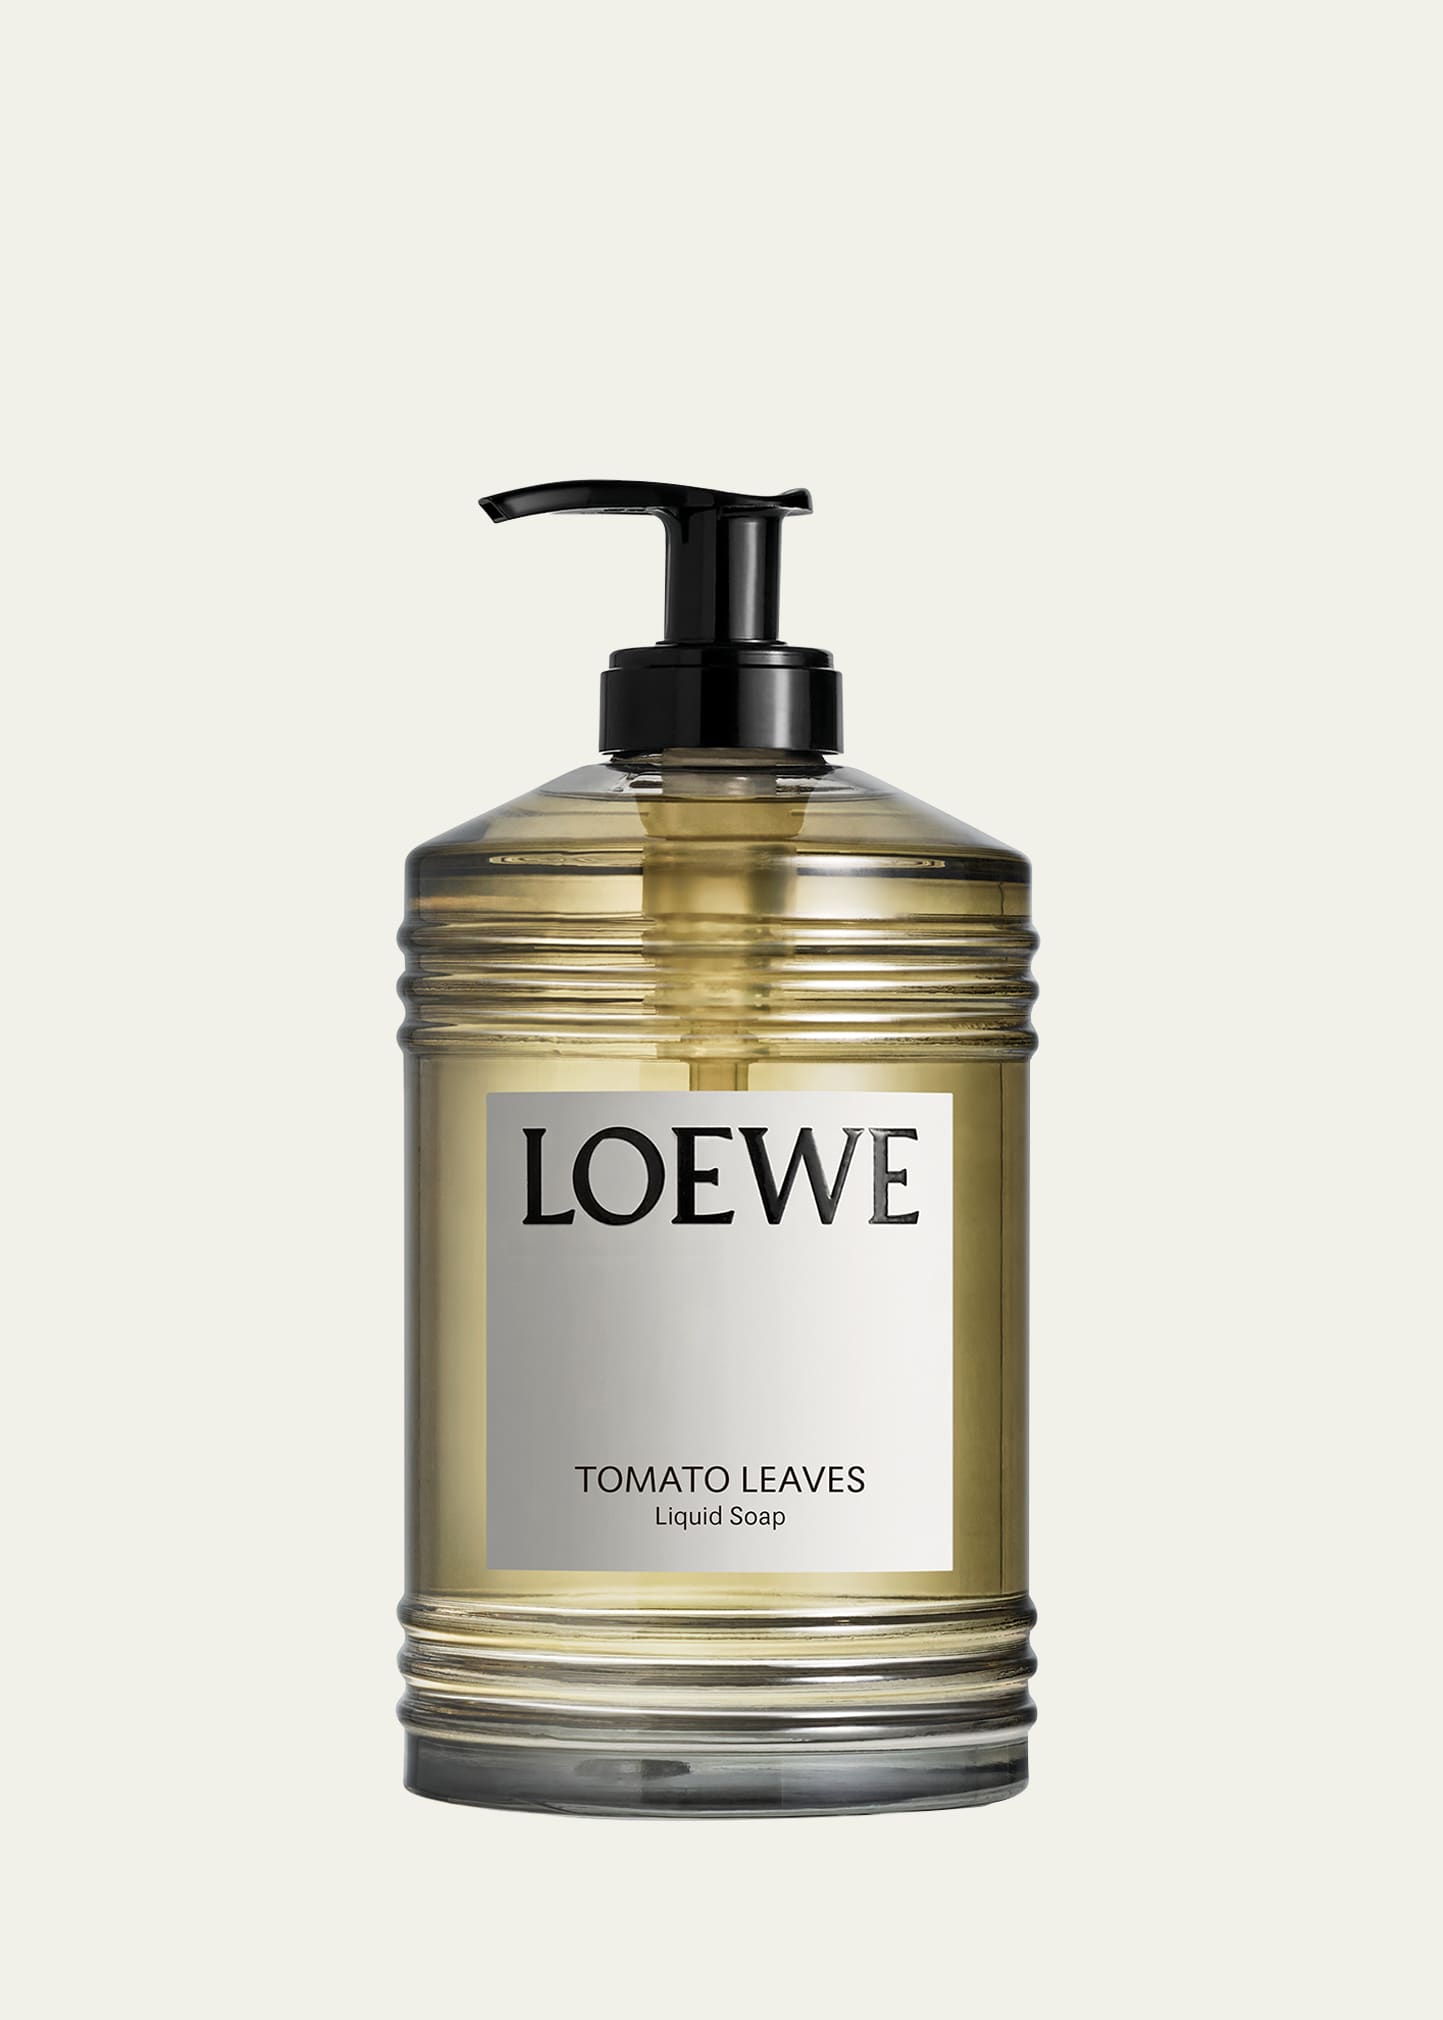 Loewe Tomato Leaves Liquid Soap, 12 Oz.